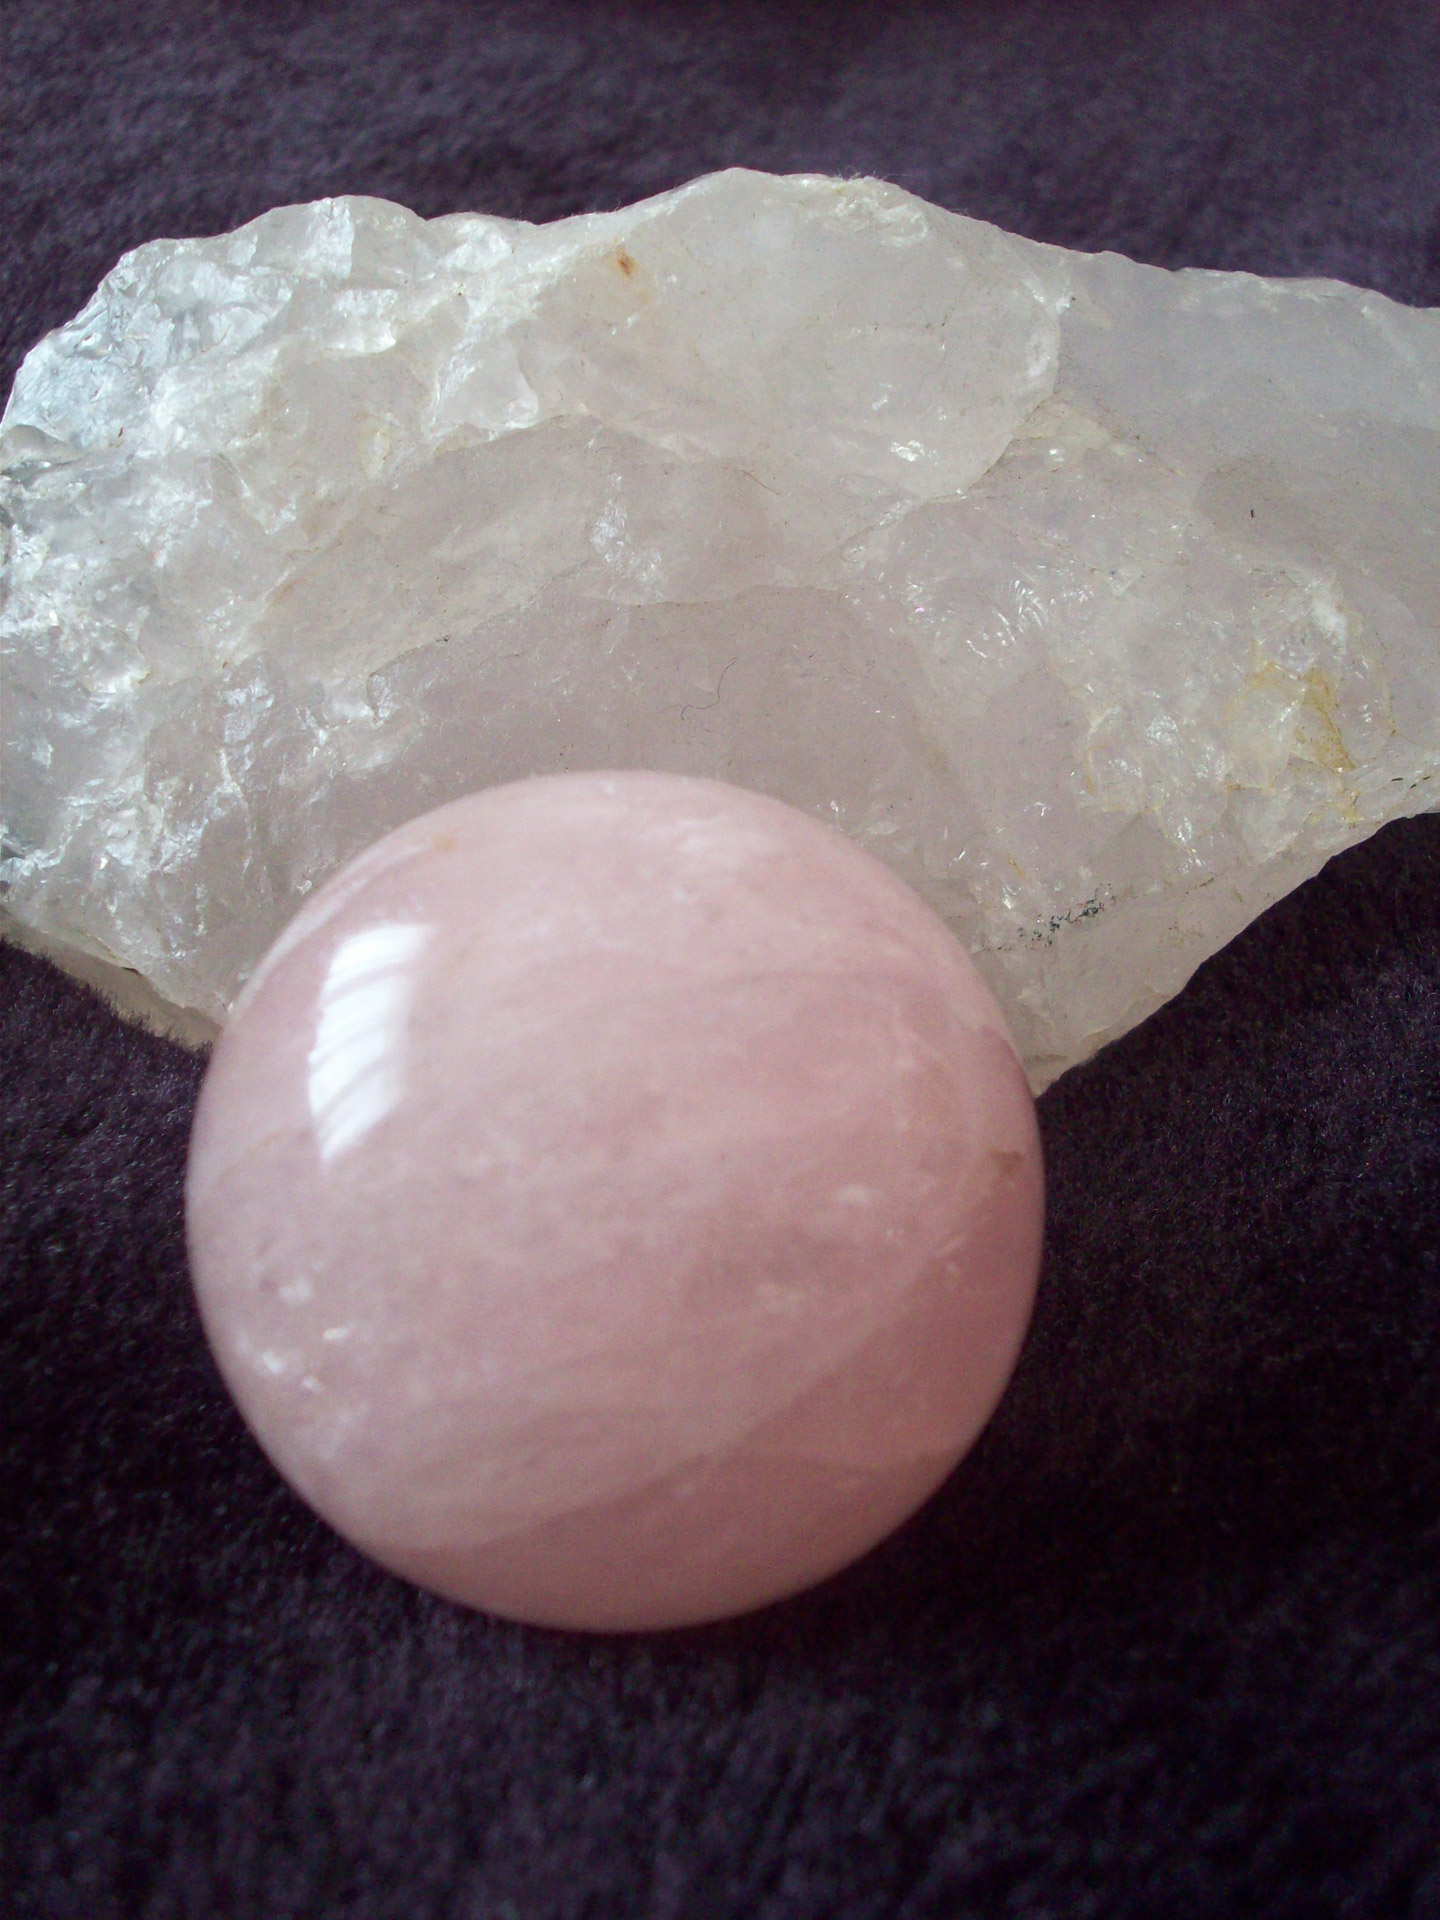 rose quartz rose quartz sphere natural rose quartz free photo